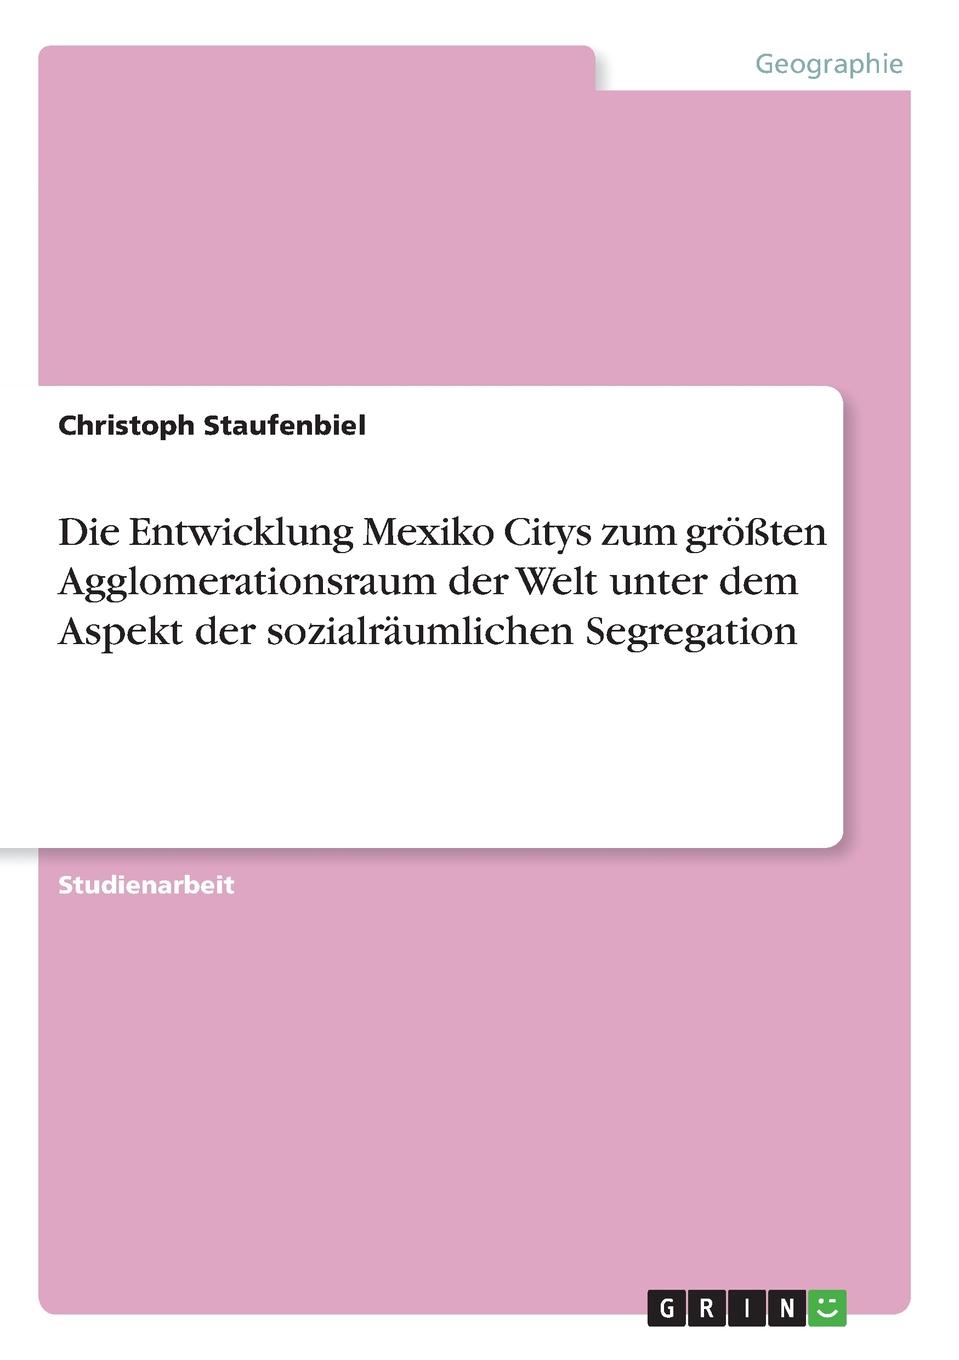 фото Die Entwicklung Mexiko Citys zum grossten Agglomerationsraum der Welt unter dem Aspekt der sozialraumlichen Segregation